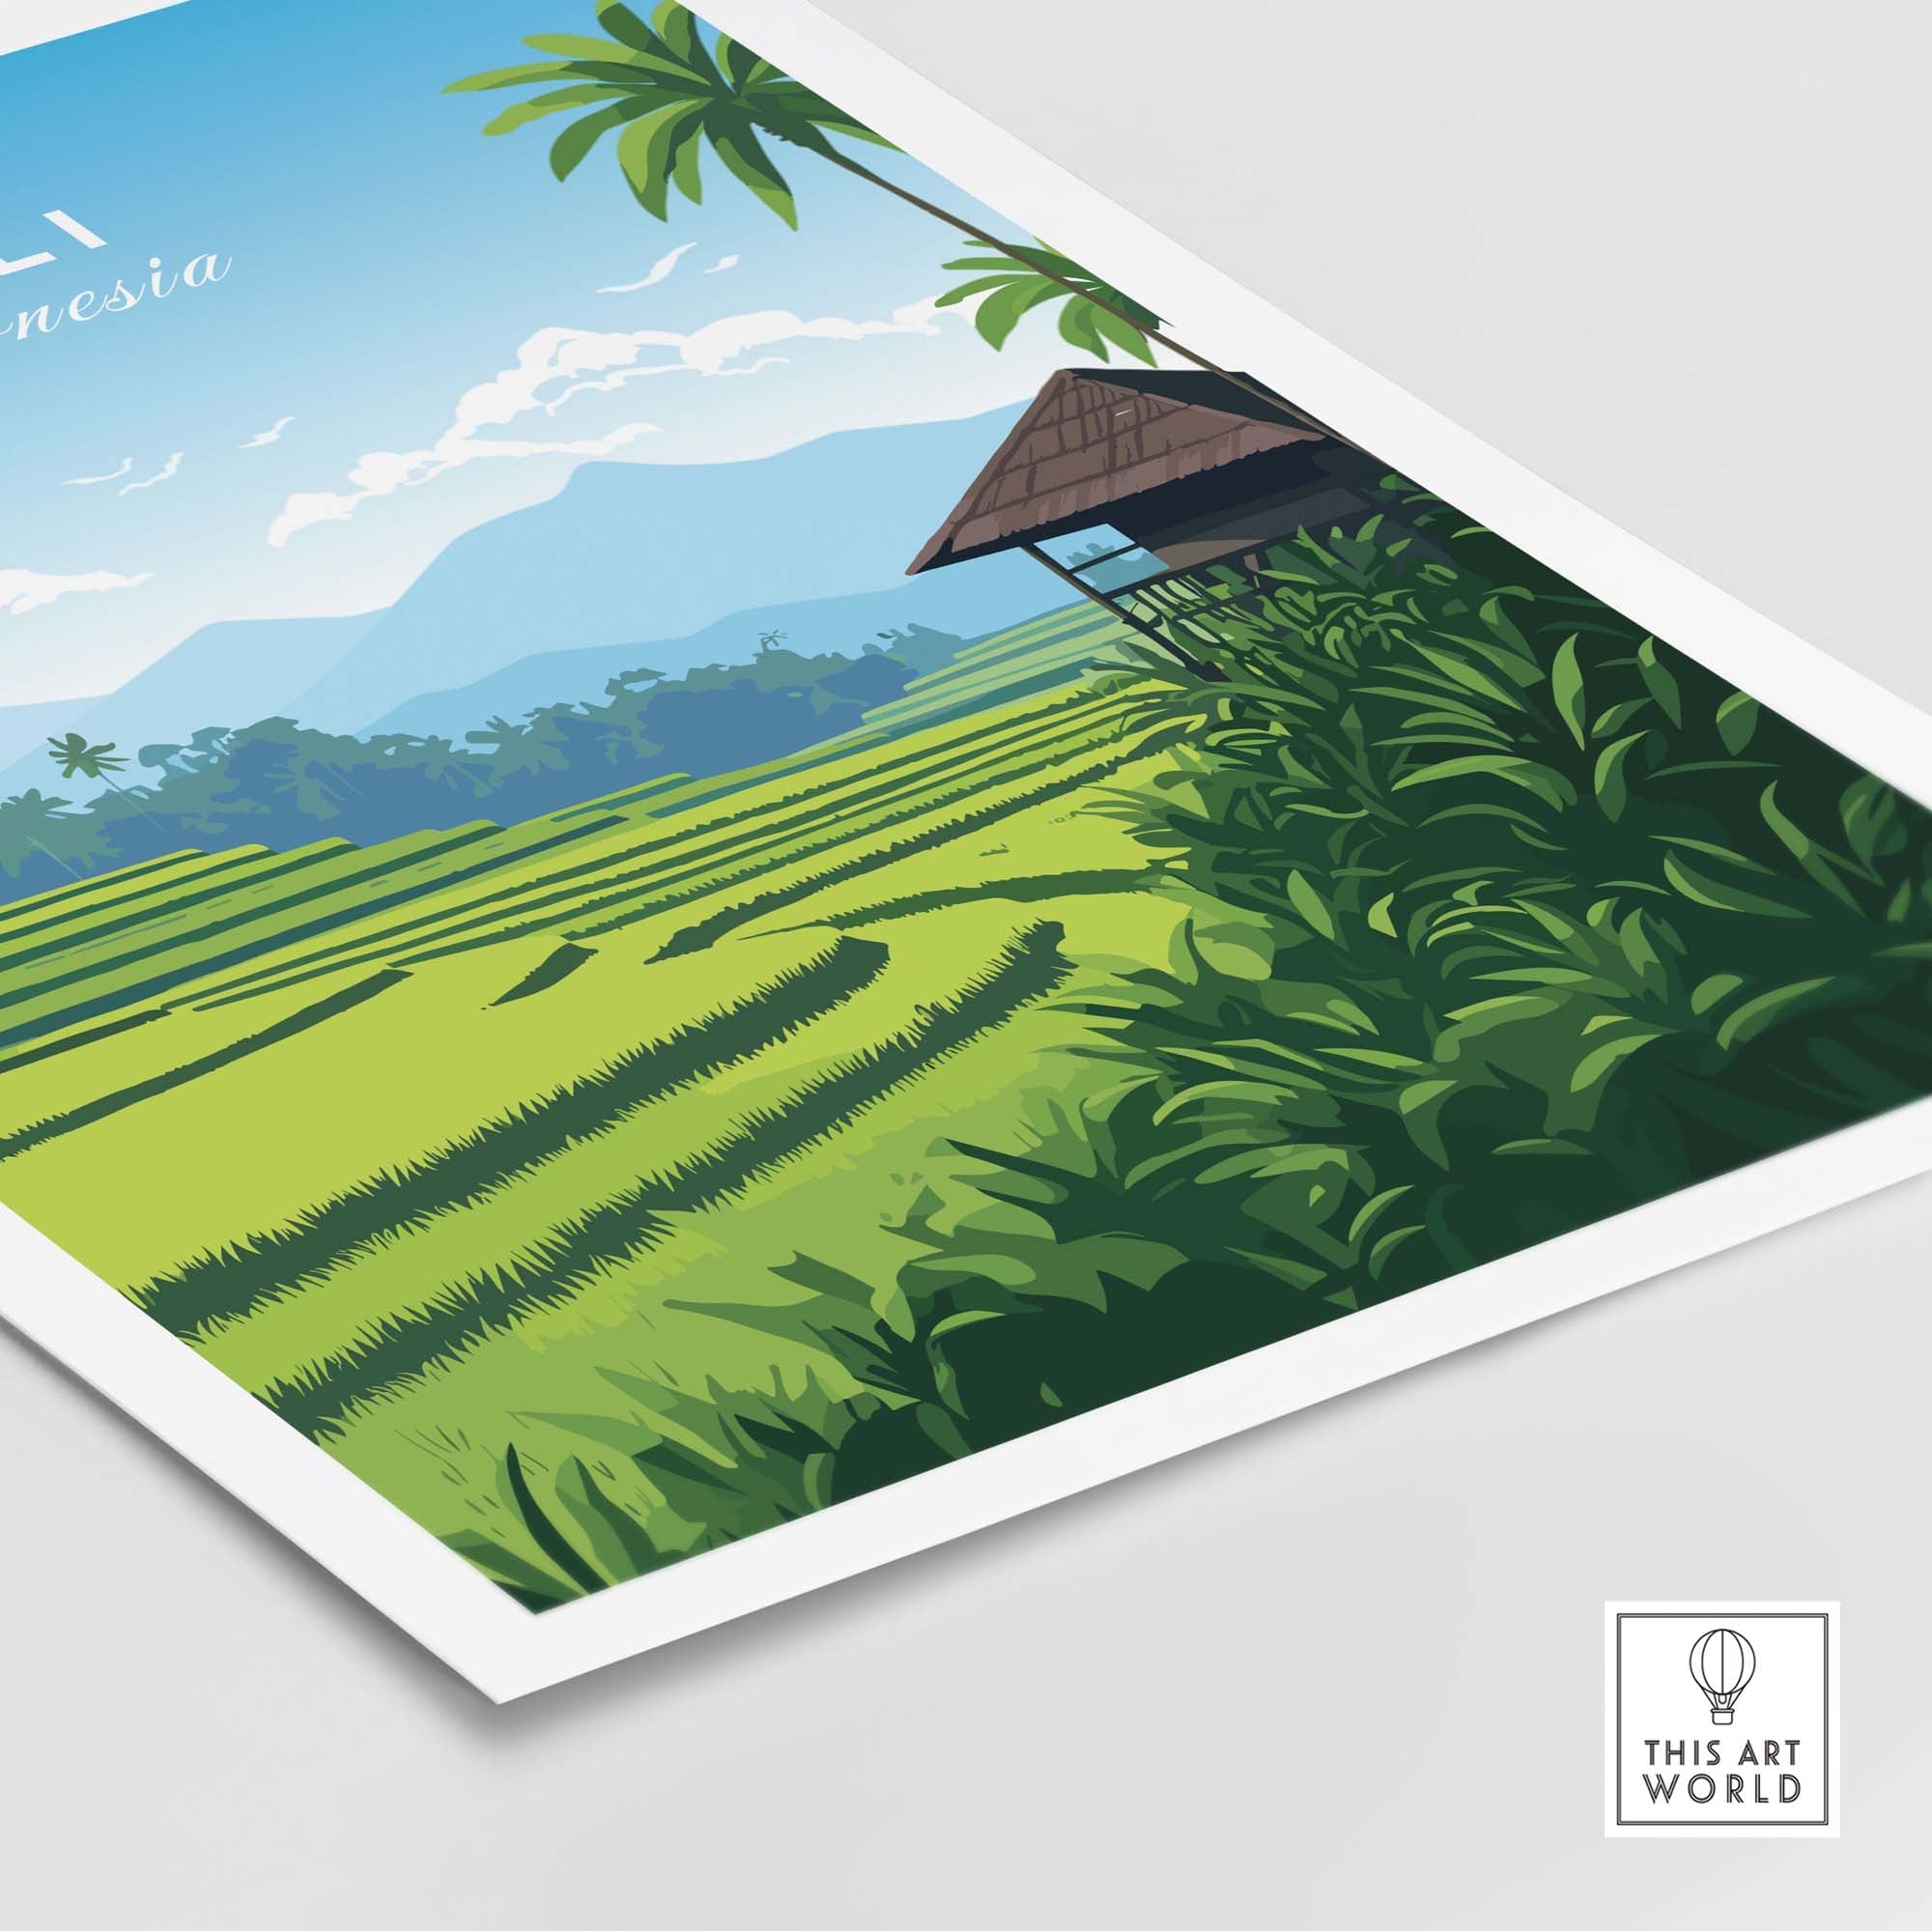 Bali Prints